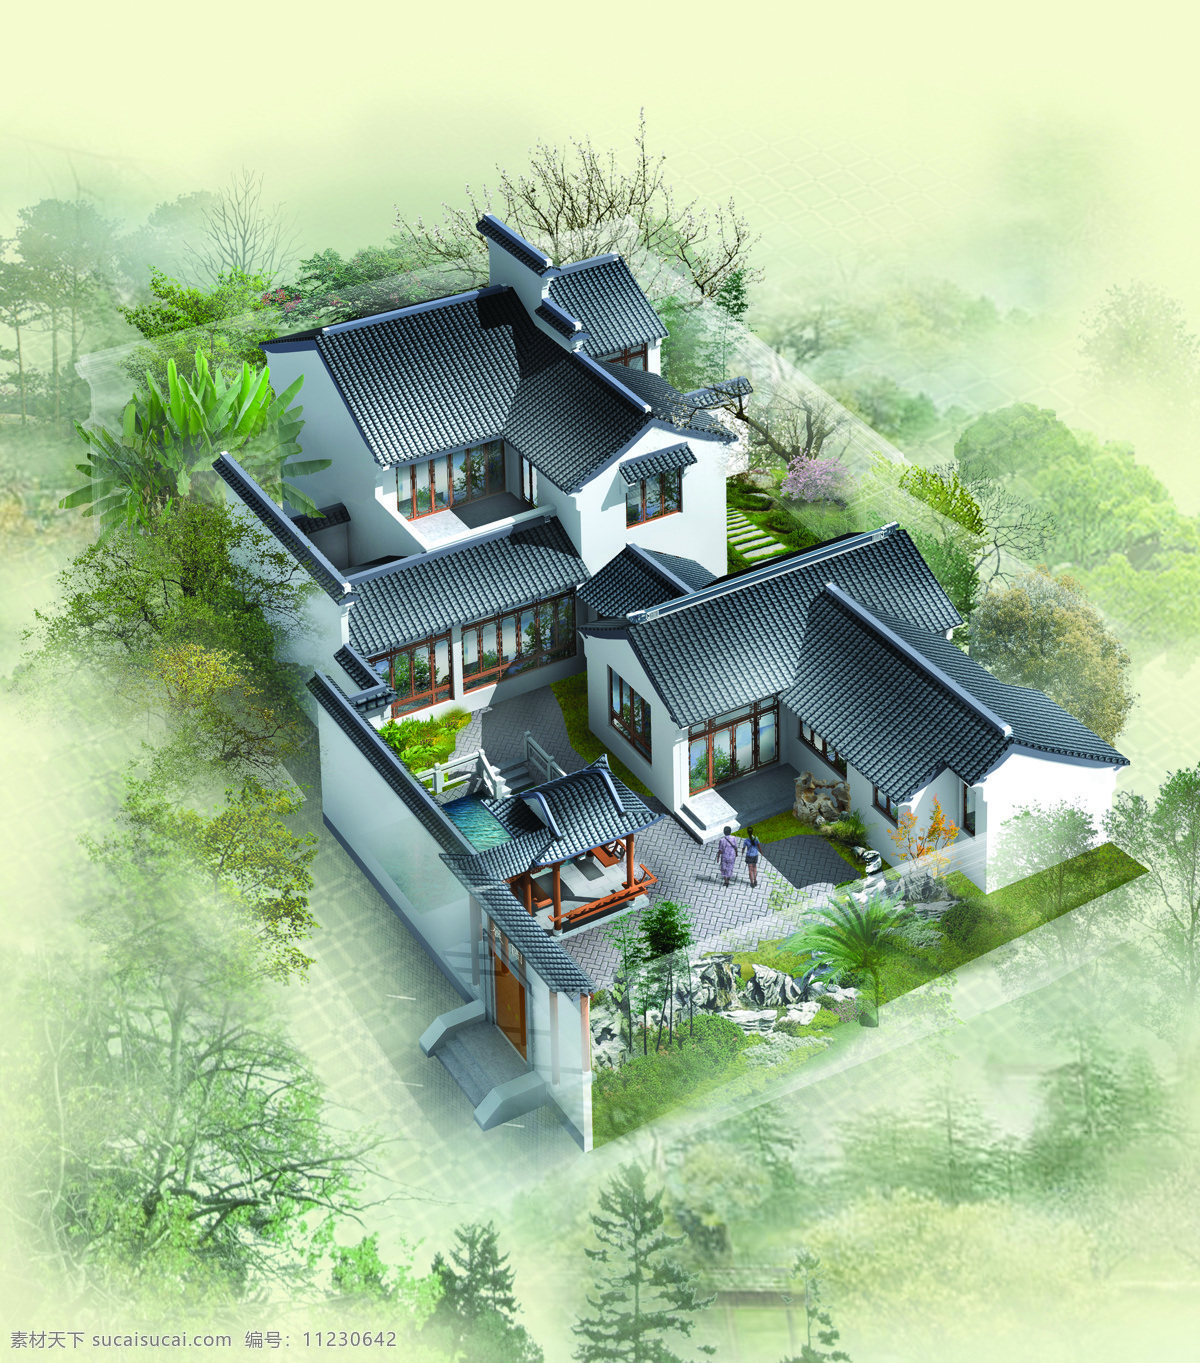 中国 古典 建筑 鸟瞰 中国古典建筑 鸟瞰图 园林景观 园艺设计 建筑设计 3d 效果图 环境家居